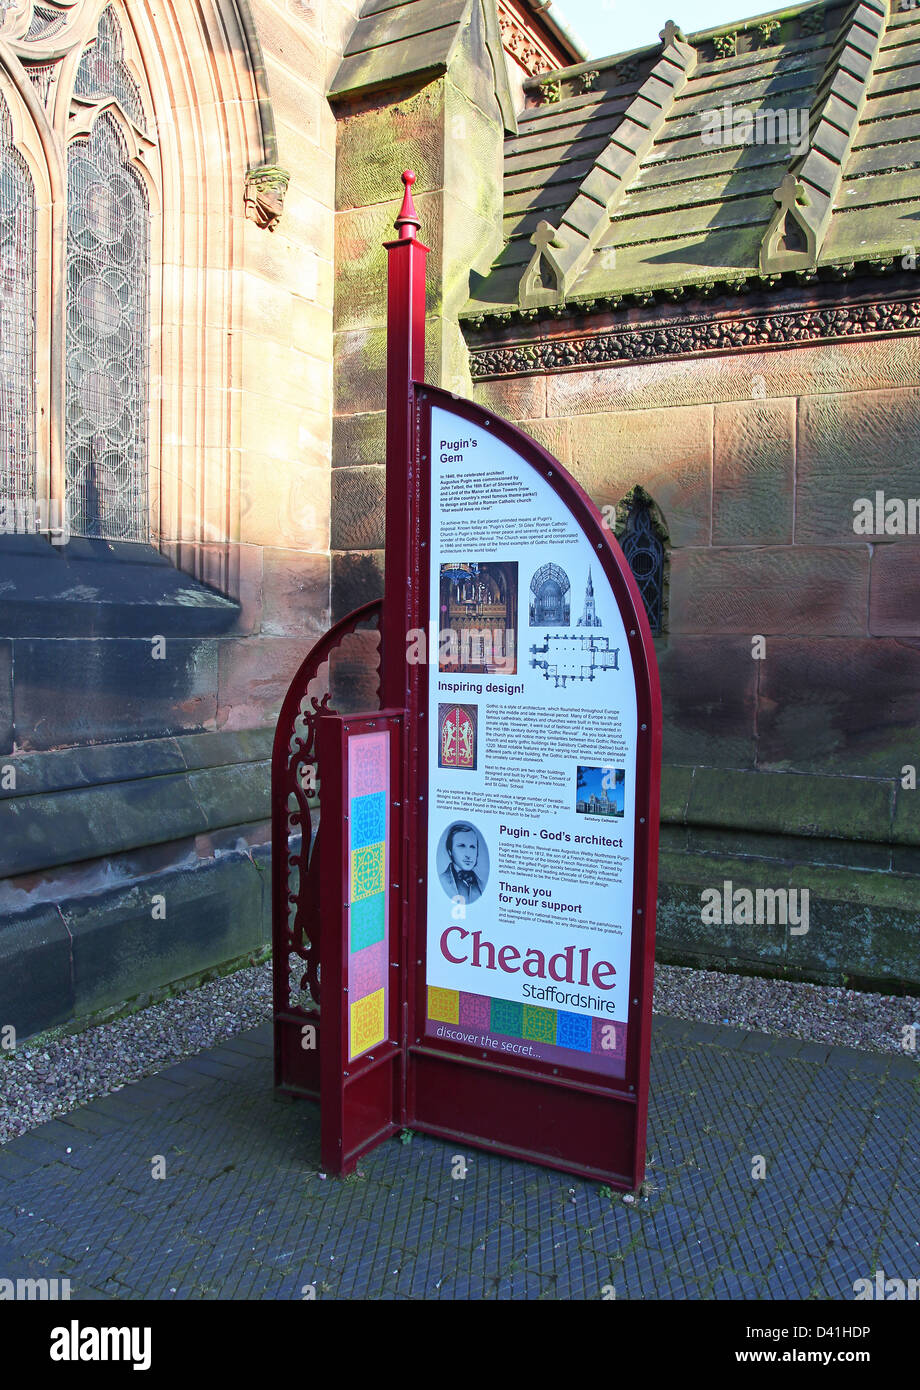 Un panneau d'information à l'église paroissiale de St Giles Cheadle Staffordshire personnel conçu par A. Pugin et connu sous le nom de gem Pugins Banque D'Images